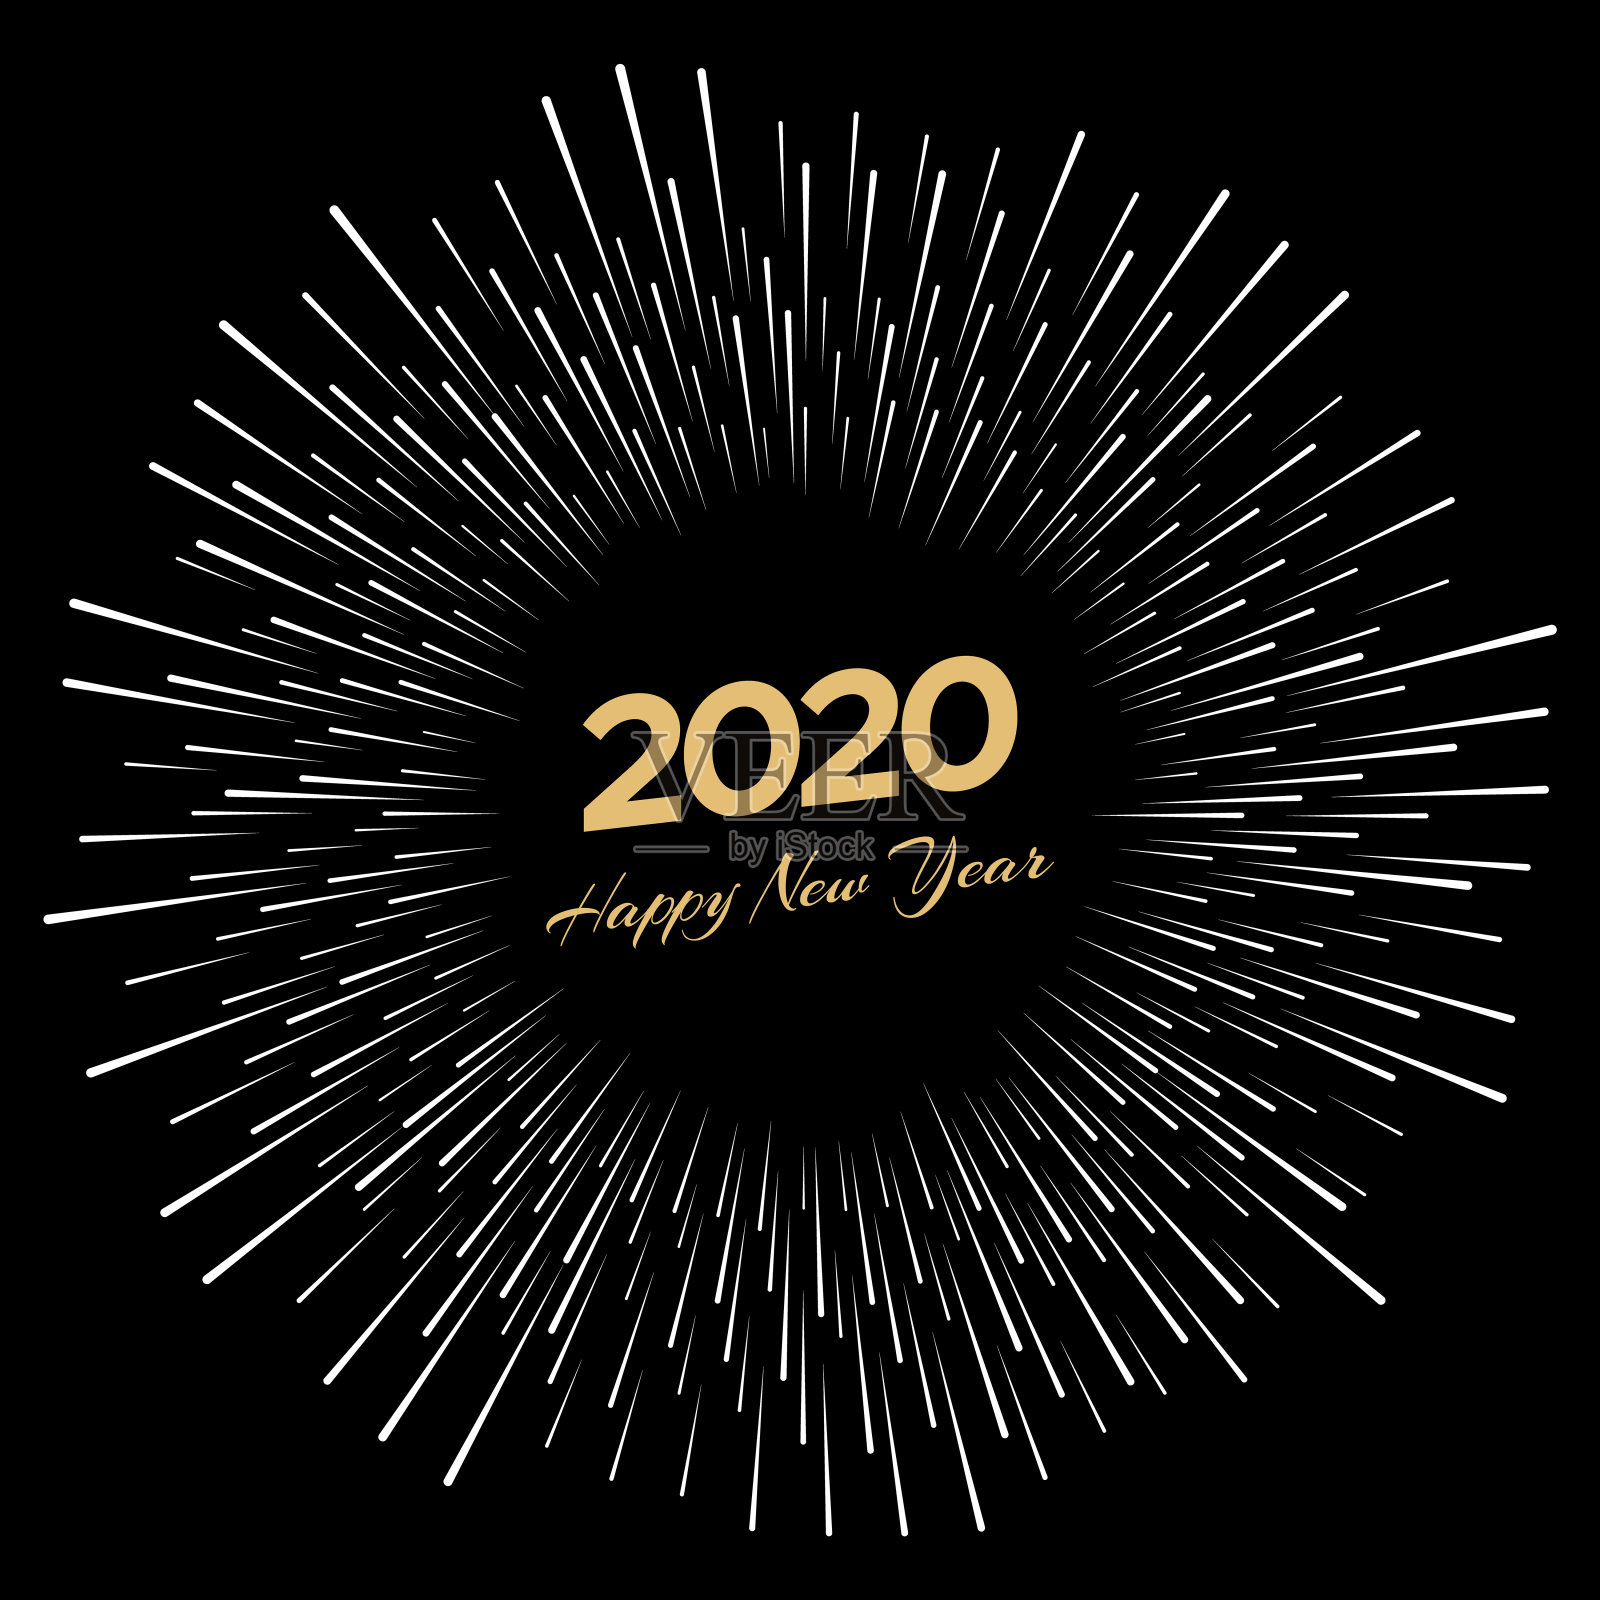 刻有“2020”和“新年快乐”字样的烟花插画图片素材